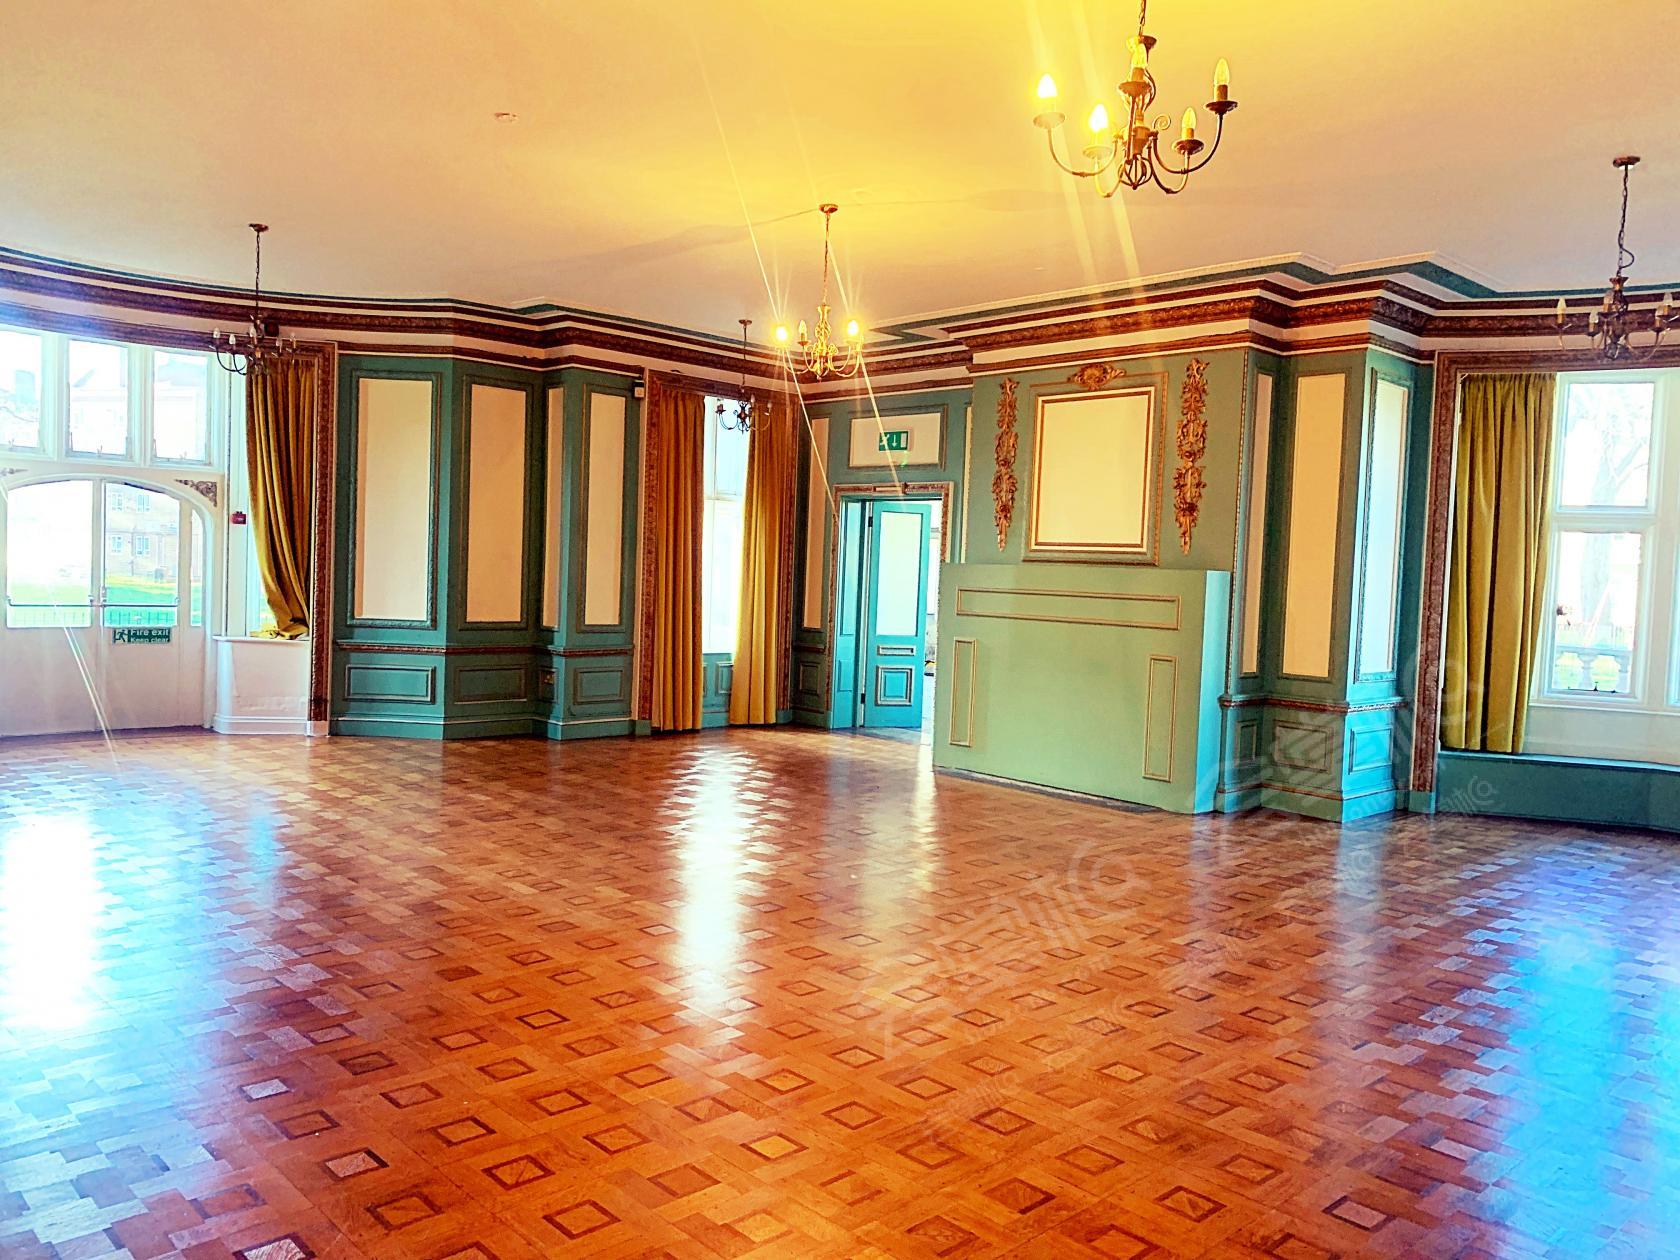 Golden Room (Ballroom)